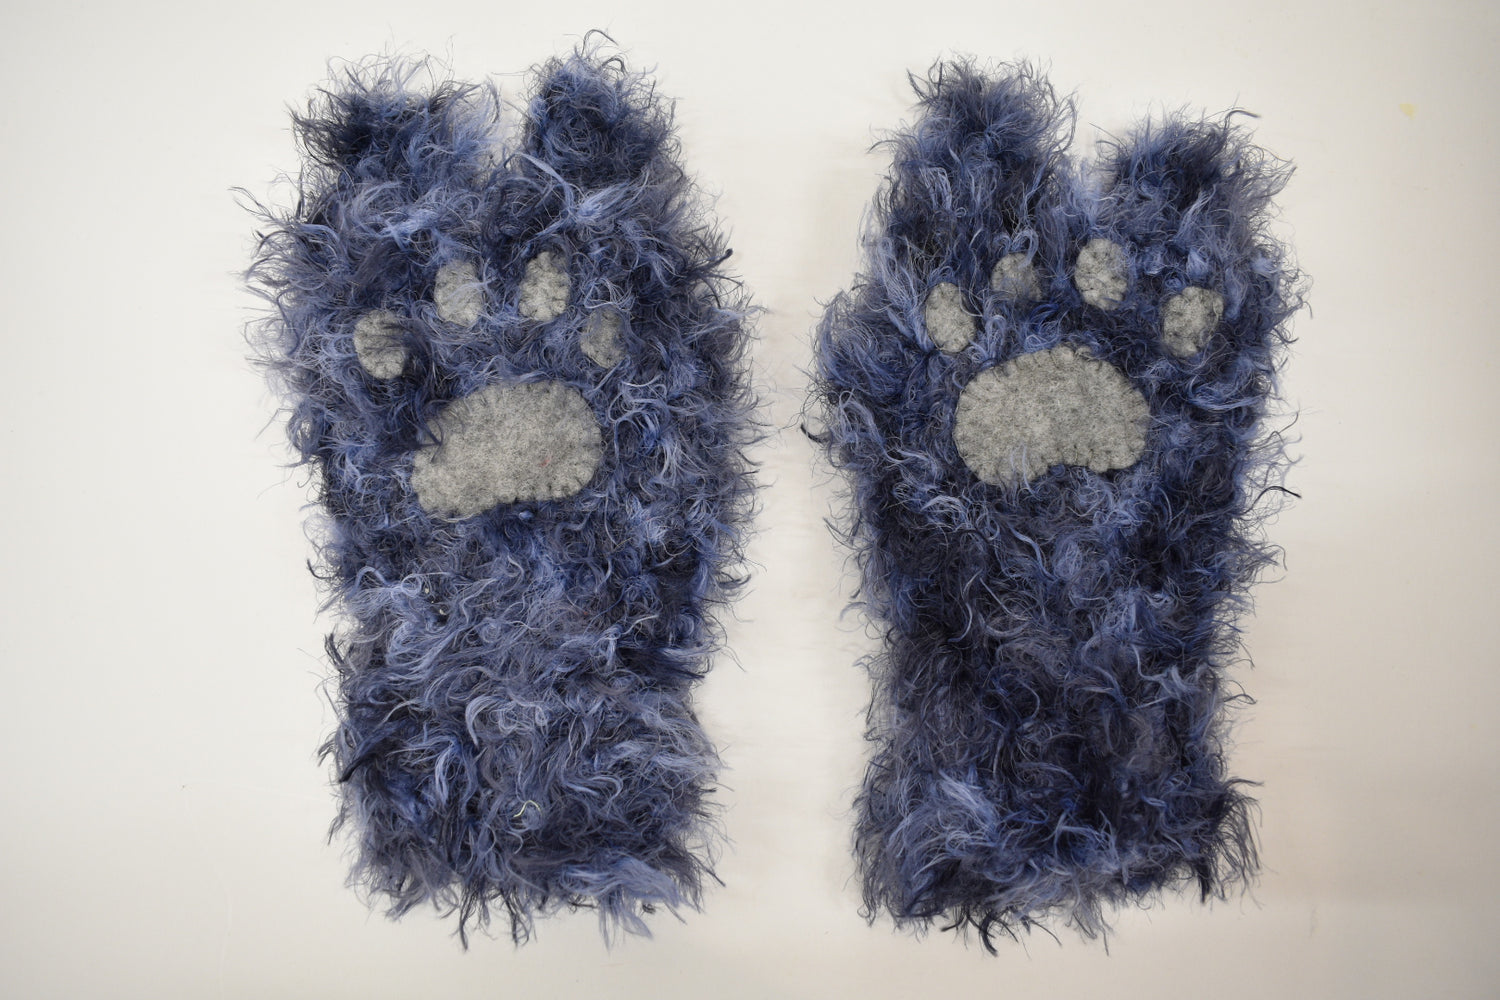 Animal Paw Gloves